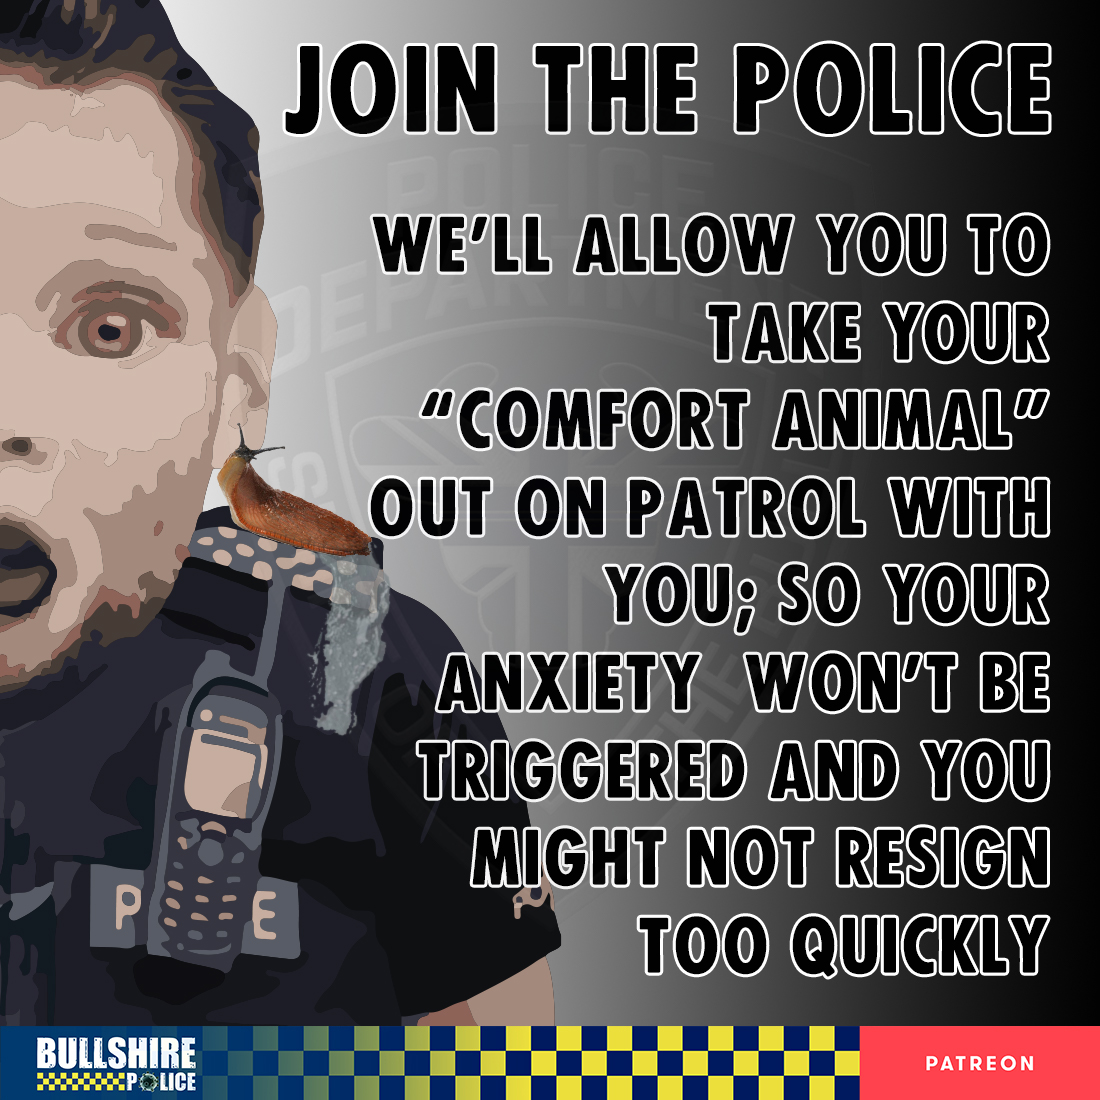 Bullshire Police (@BullshirePolice) on Twitter photo 2022-09-26 09:22:46